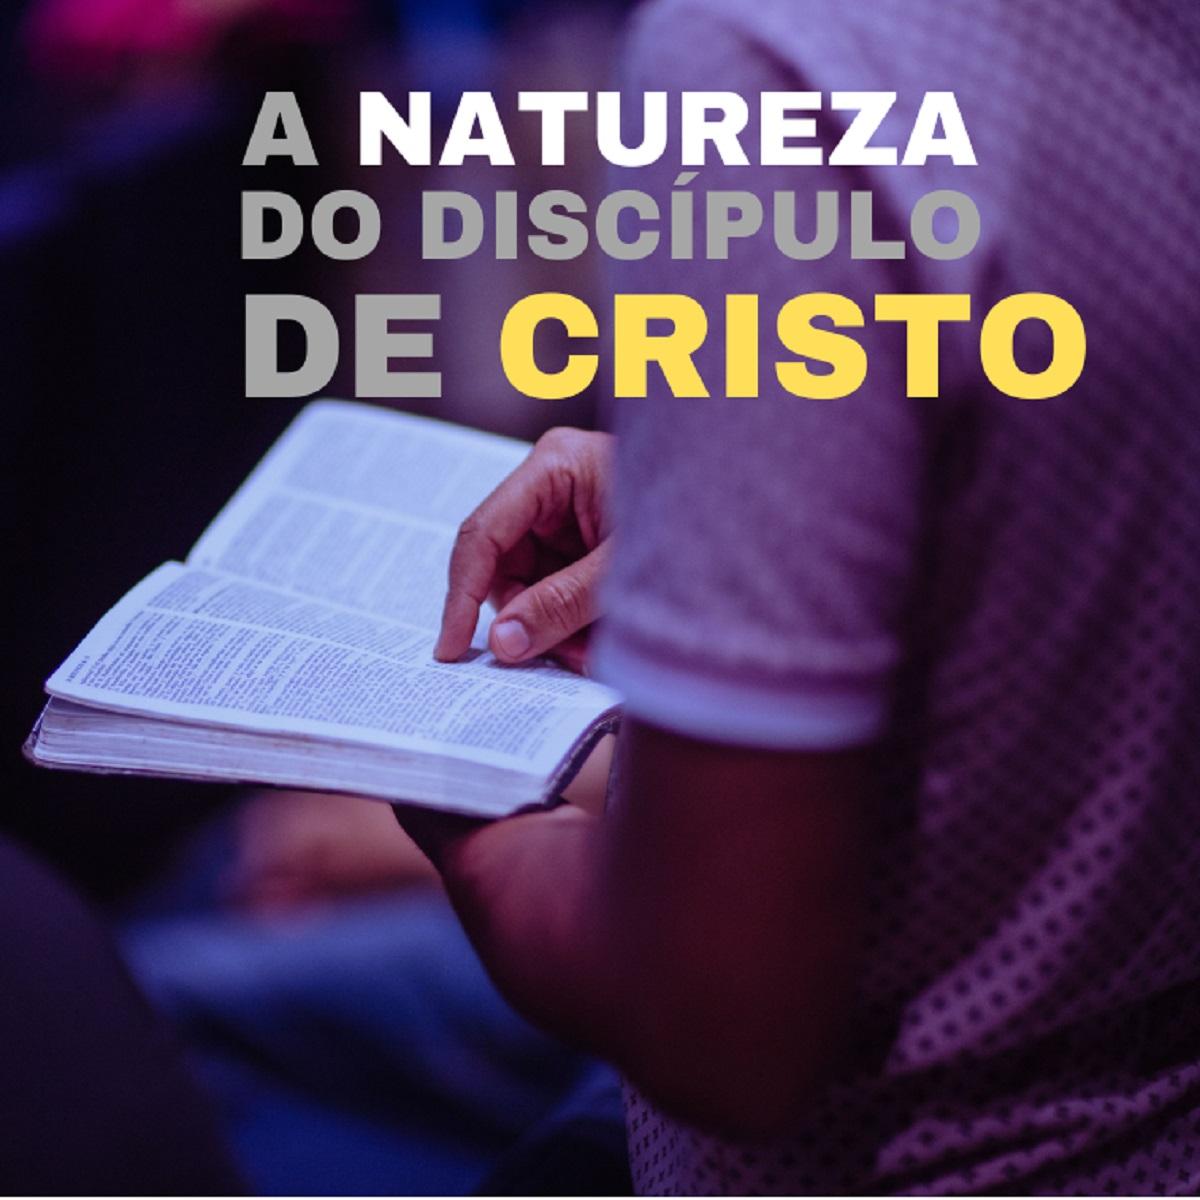 1. A Natureza do Discípulo de Cristo